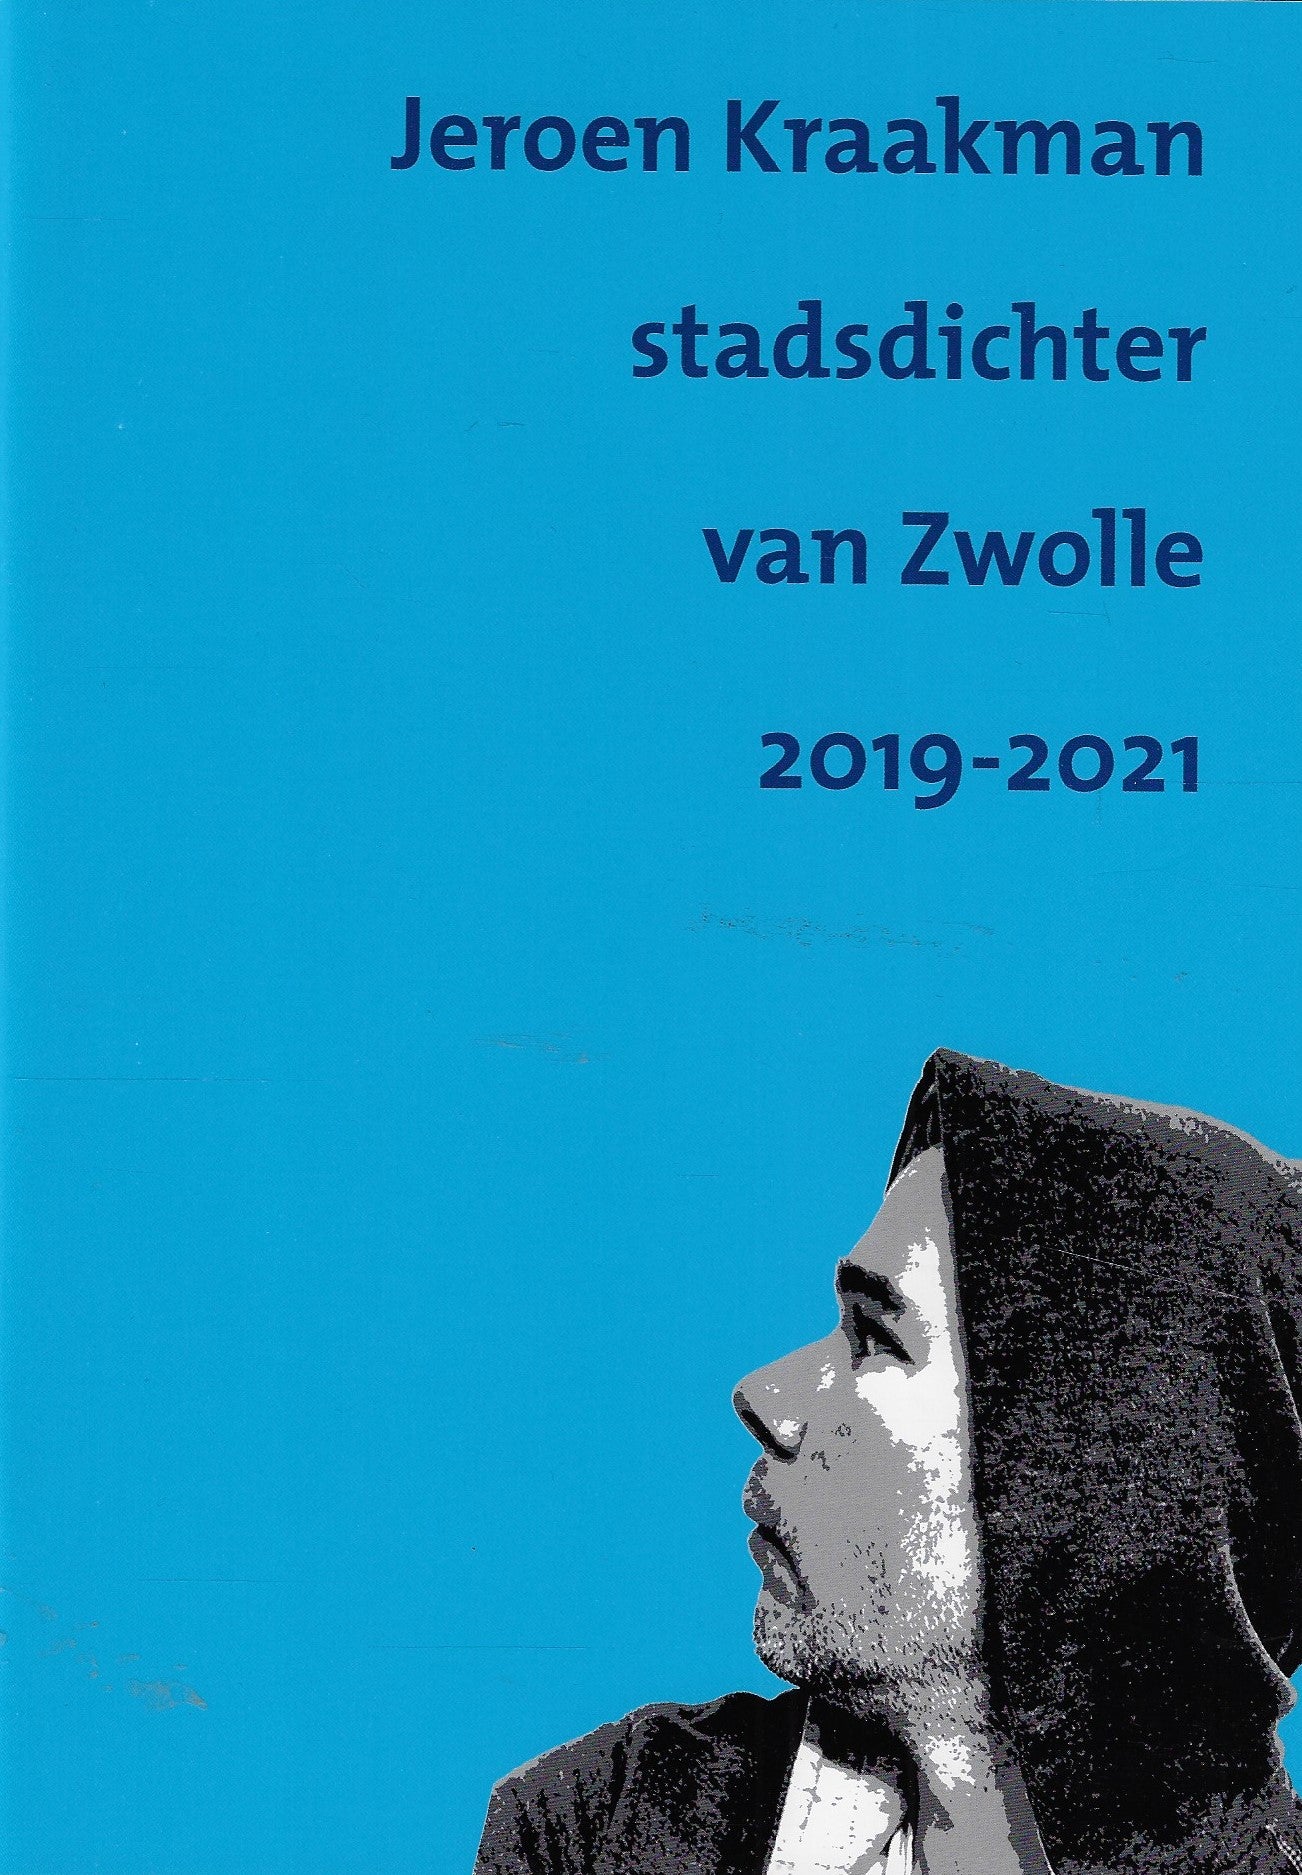 Jeroen Kraakman stadsdichter van Zwolle 2019-2021